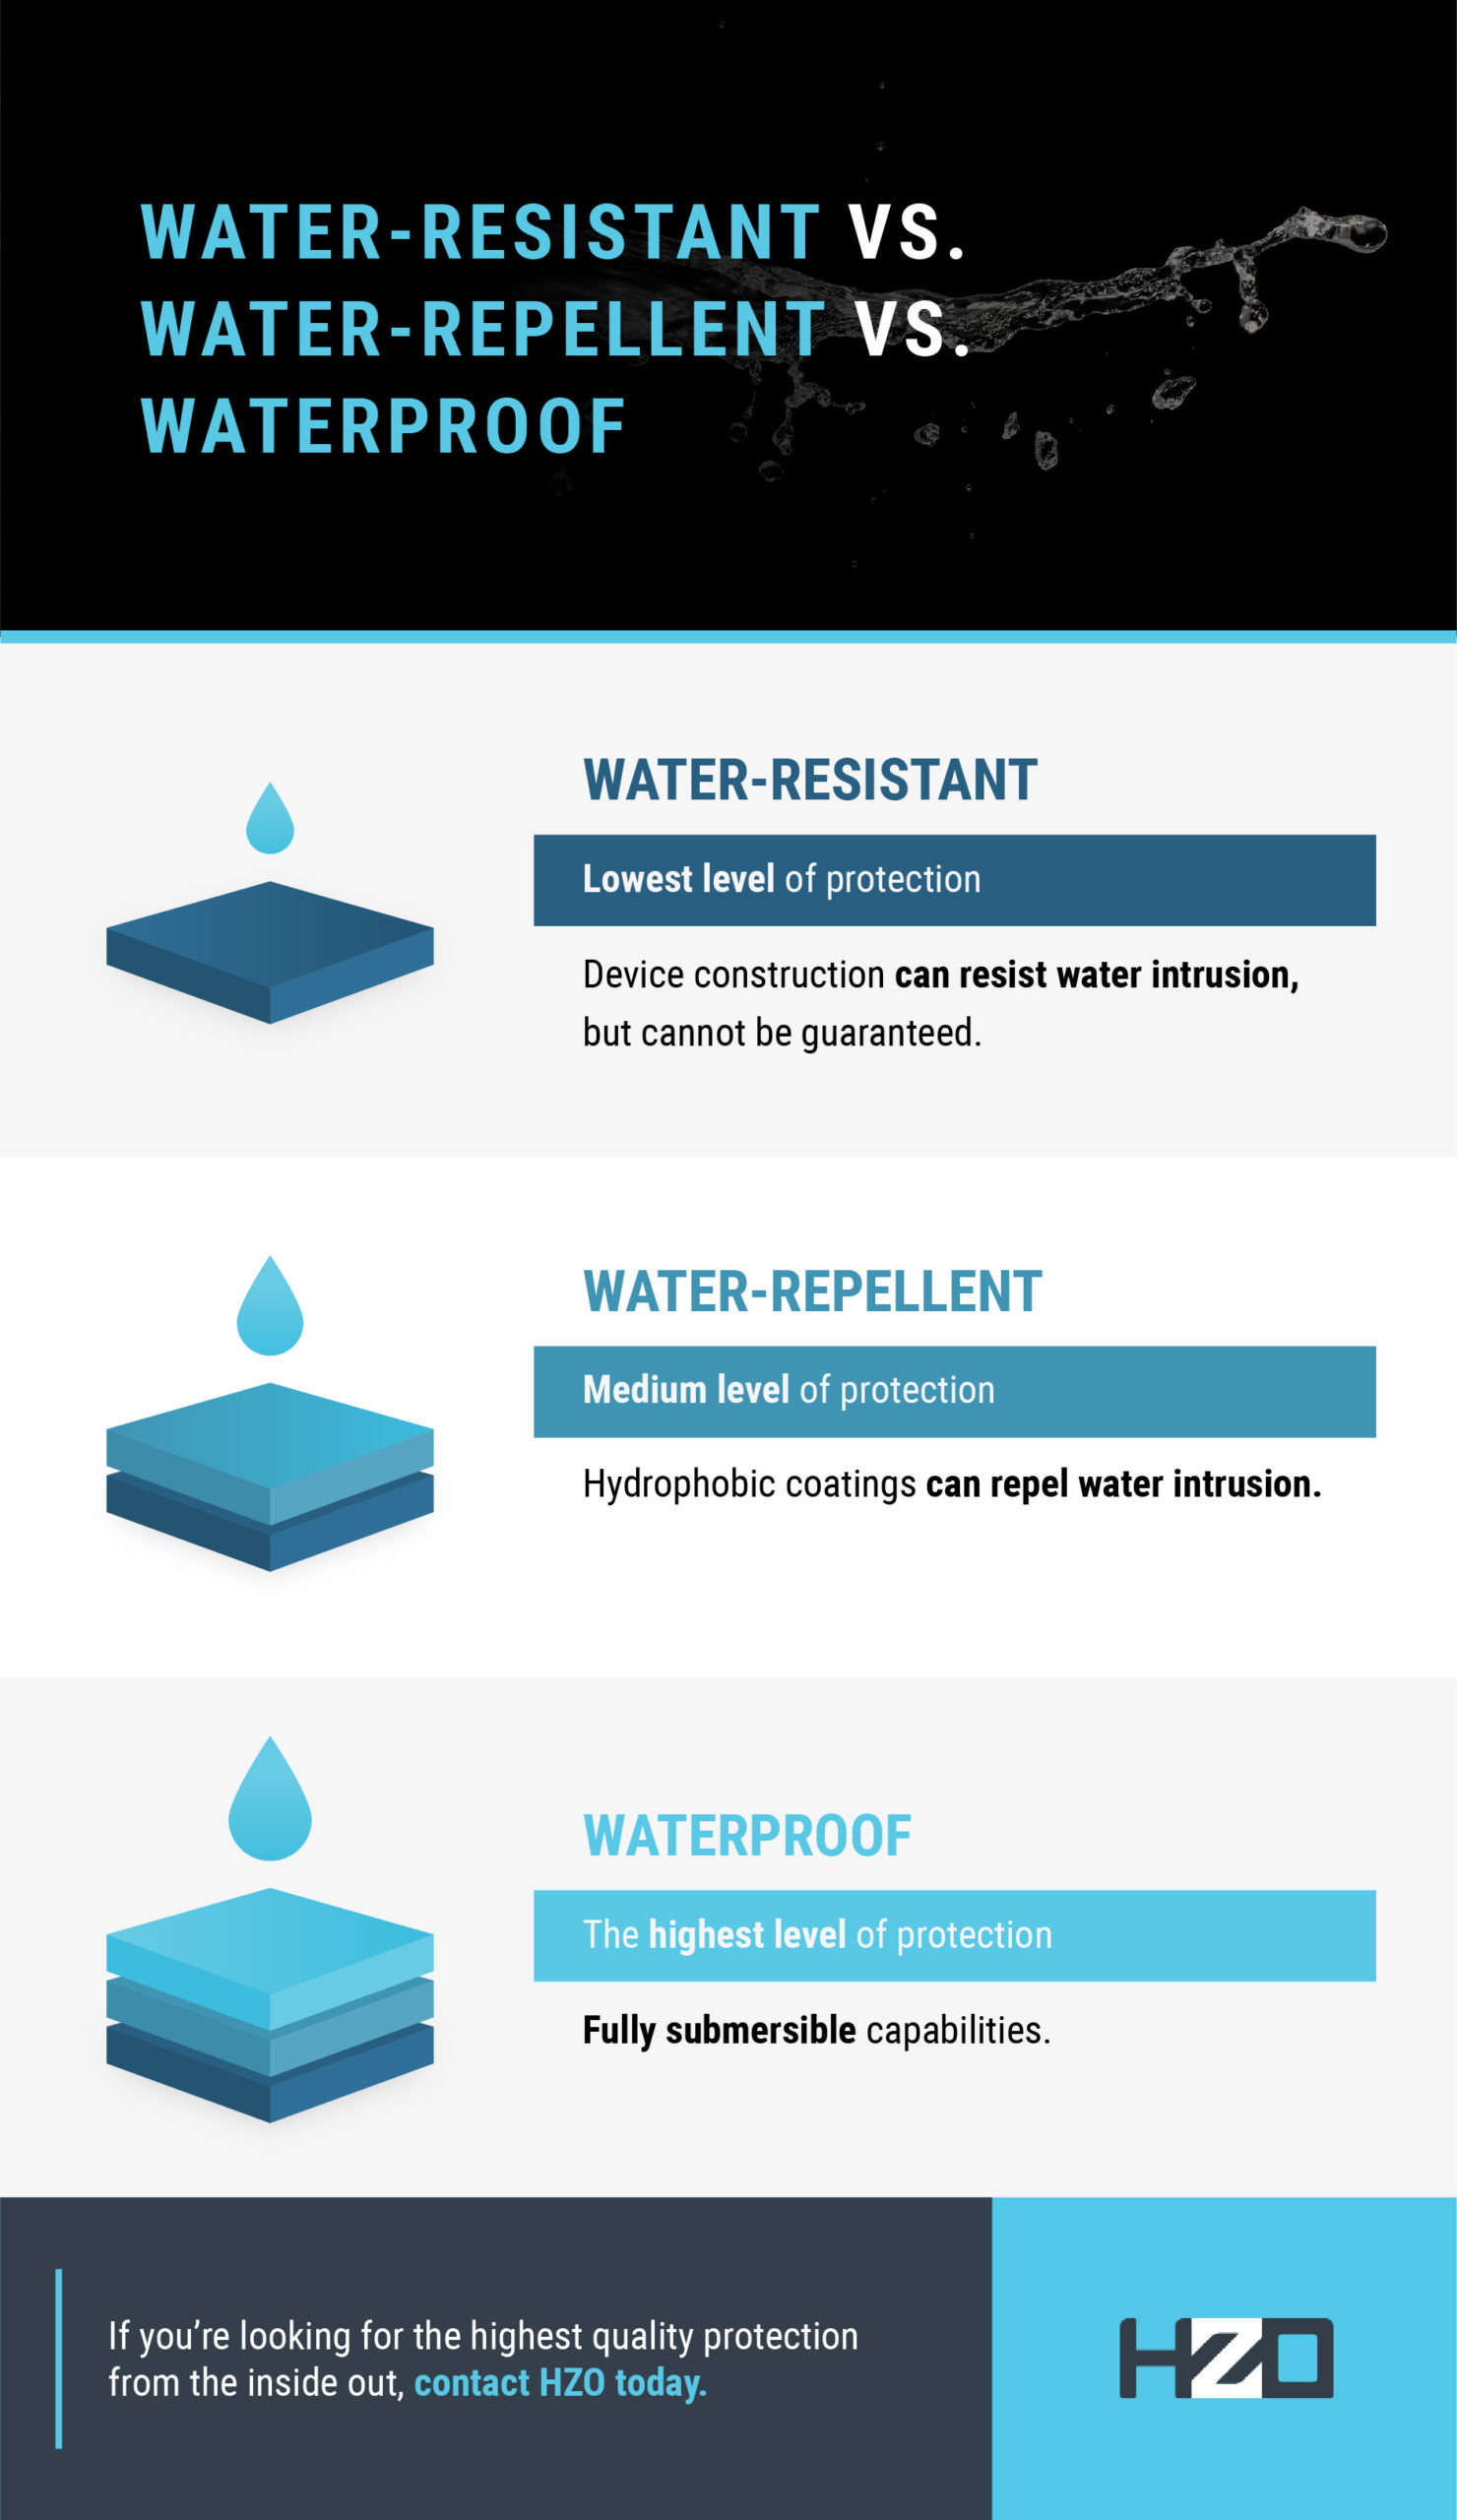 que-es-mejor-waterproof-o-water-resistant